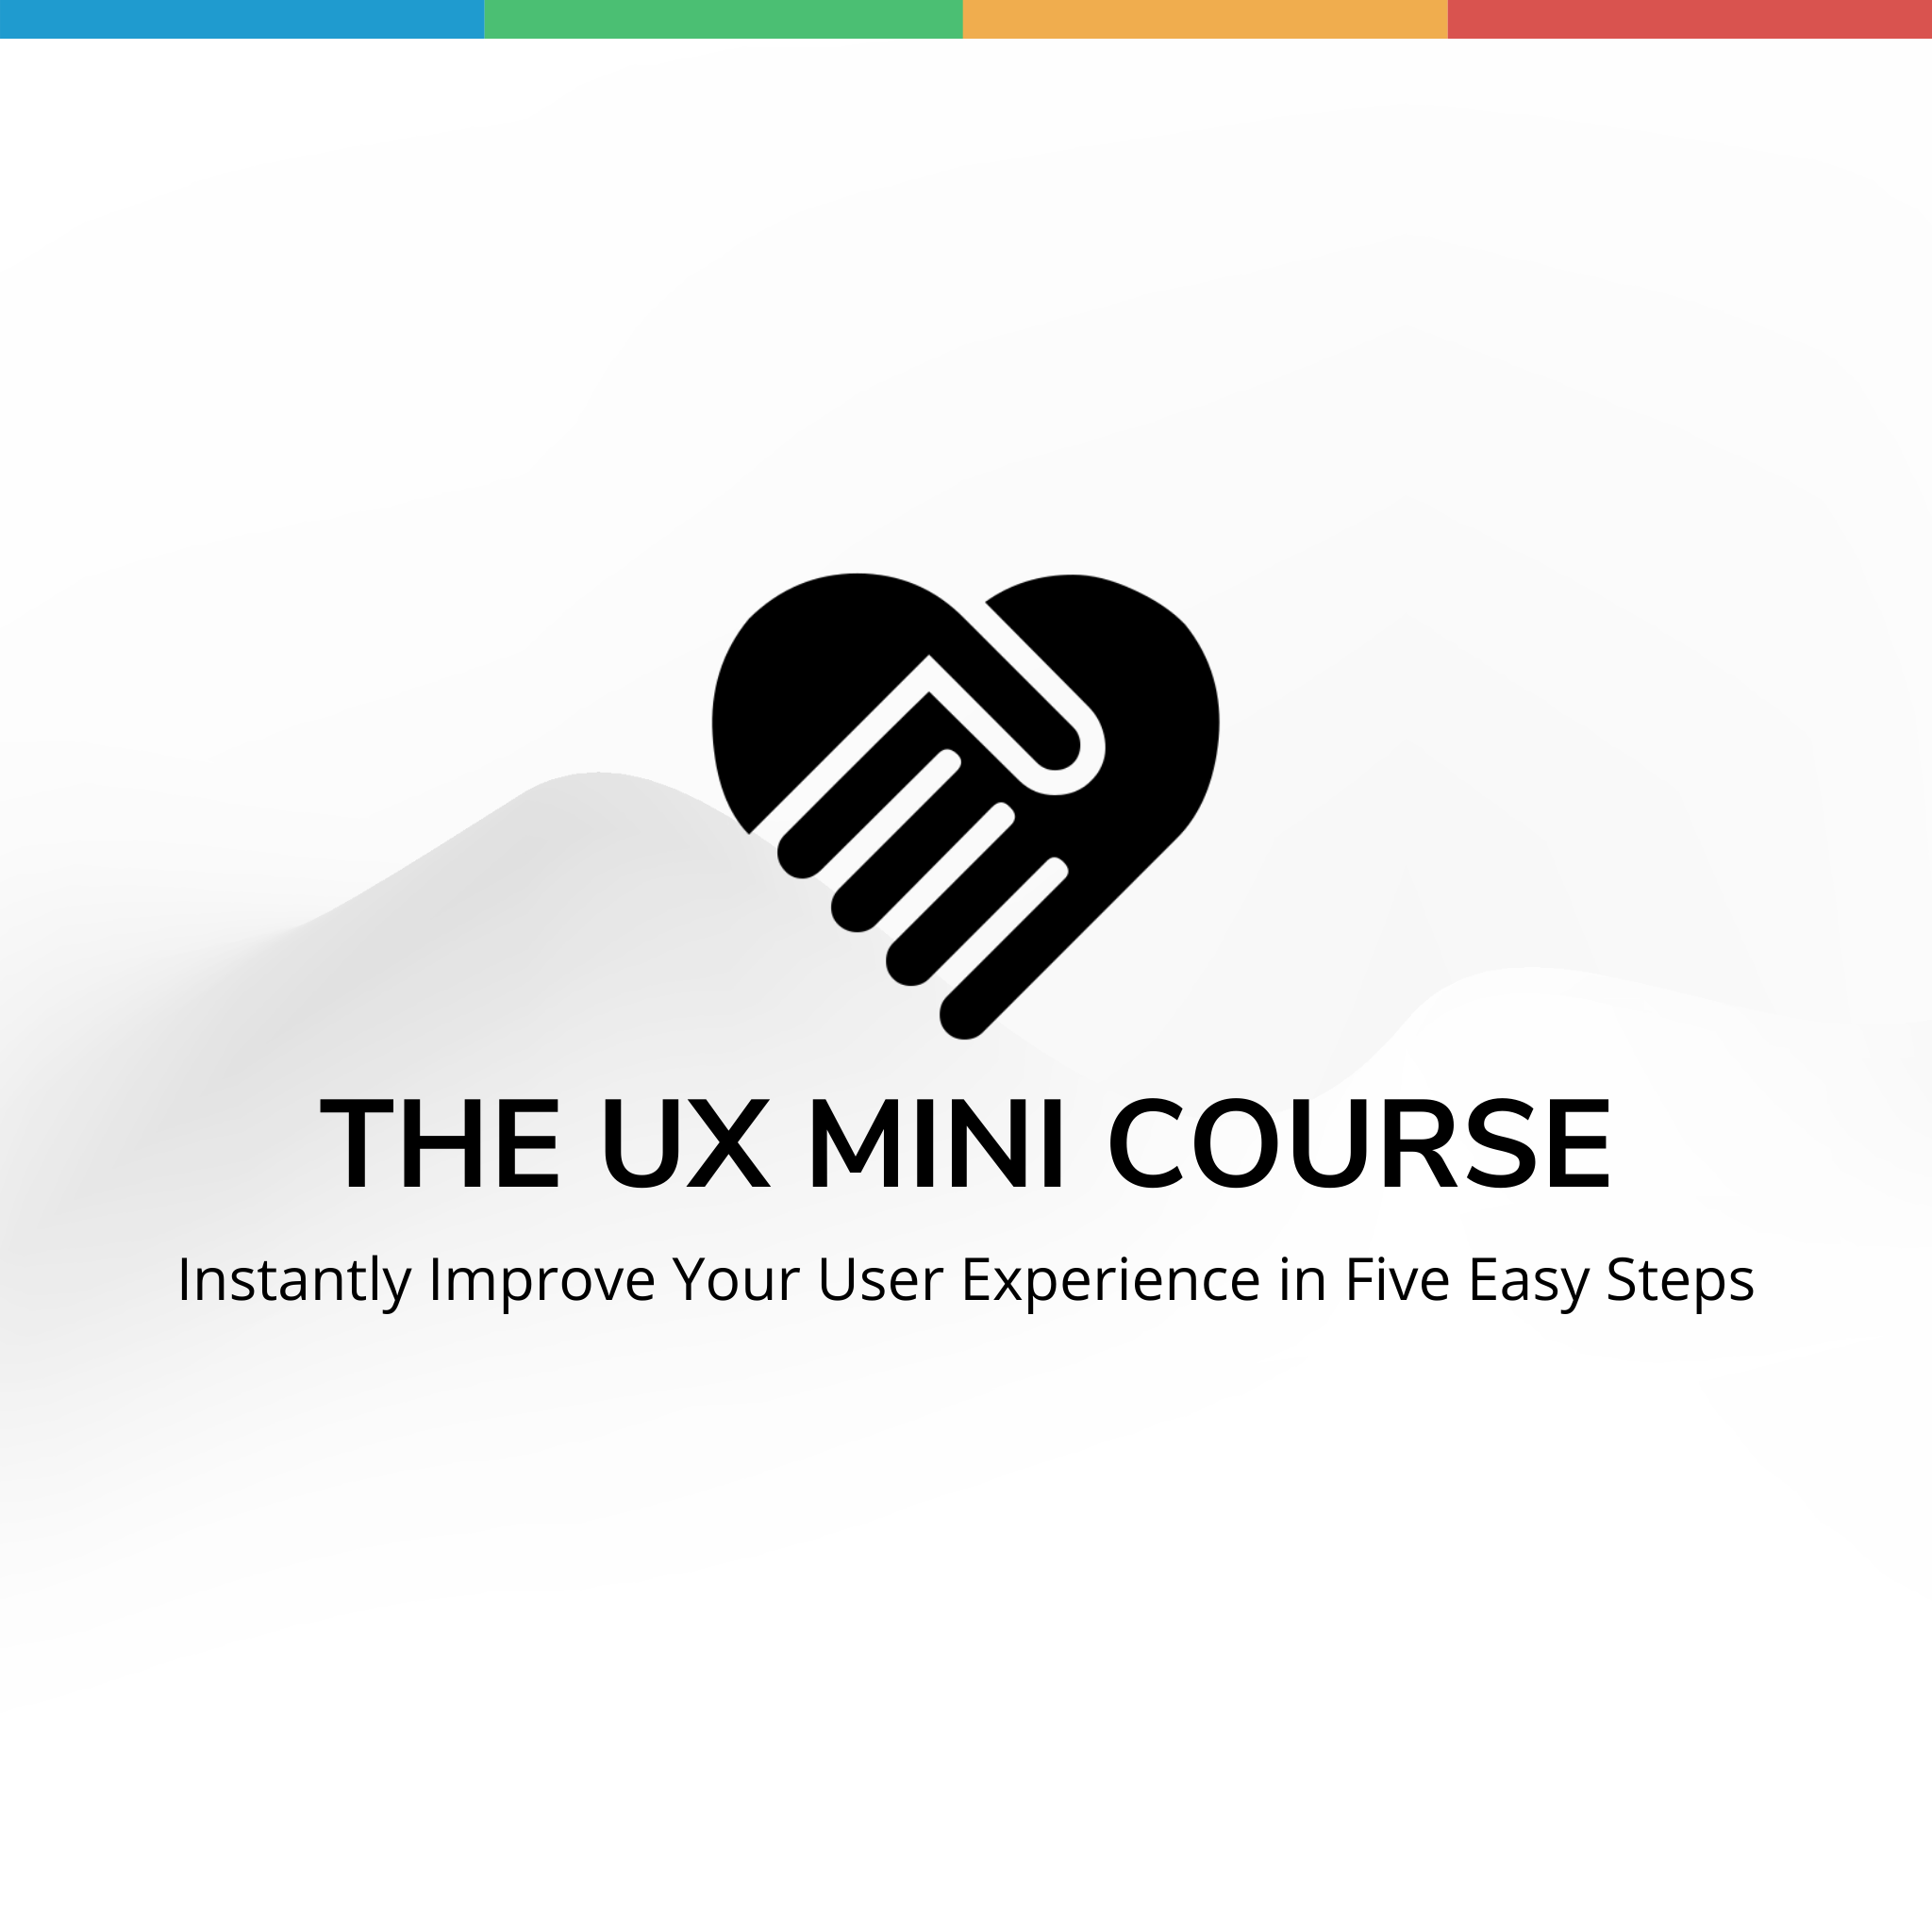 The UX Mini Course